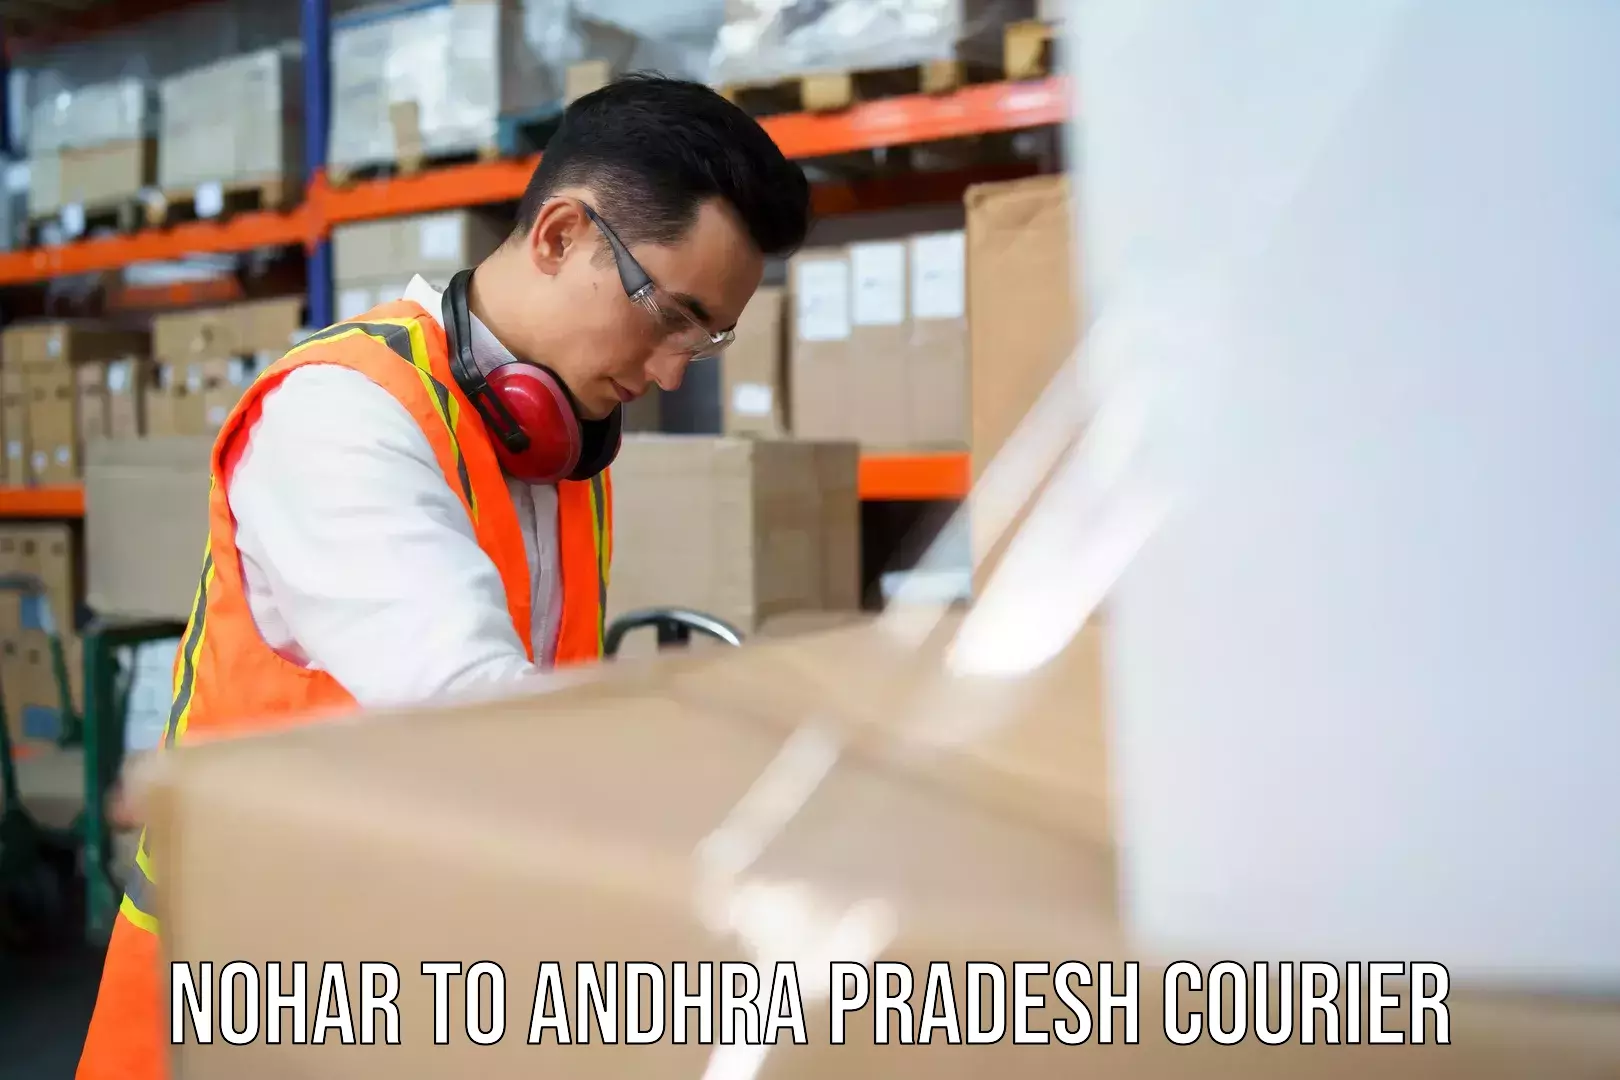 24/7 courier service Nohar to Andhra Pradesh